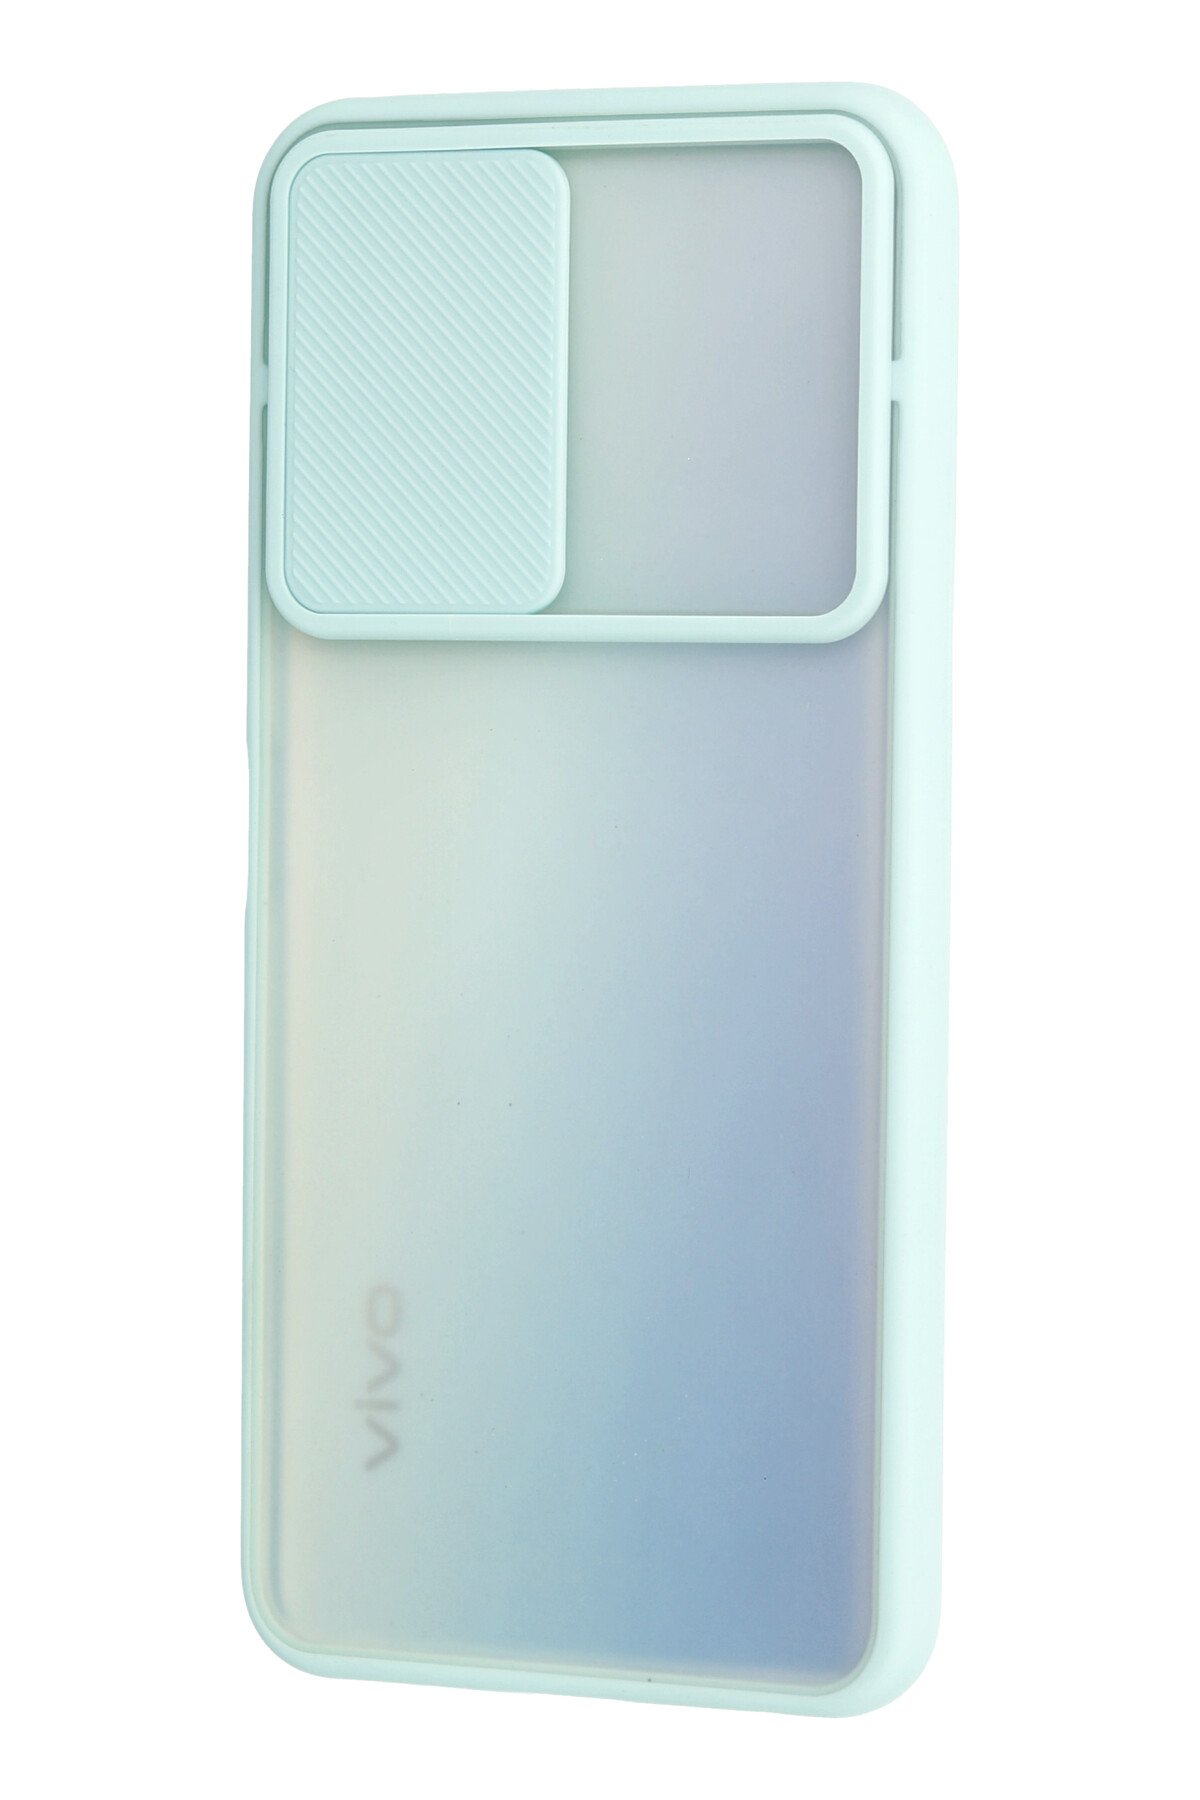 Newface Vivo Y51A Kılıf Palm Buzlu Kamera Sürgülü Silikon - Kırmızı